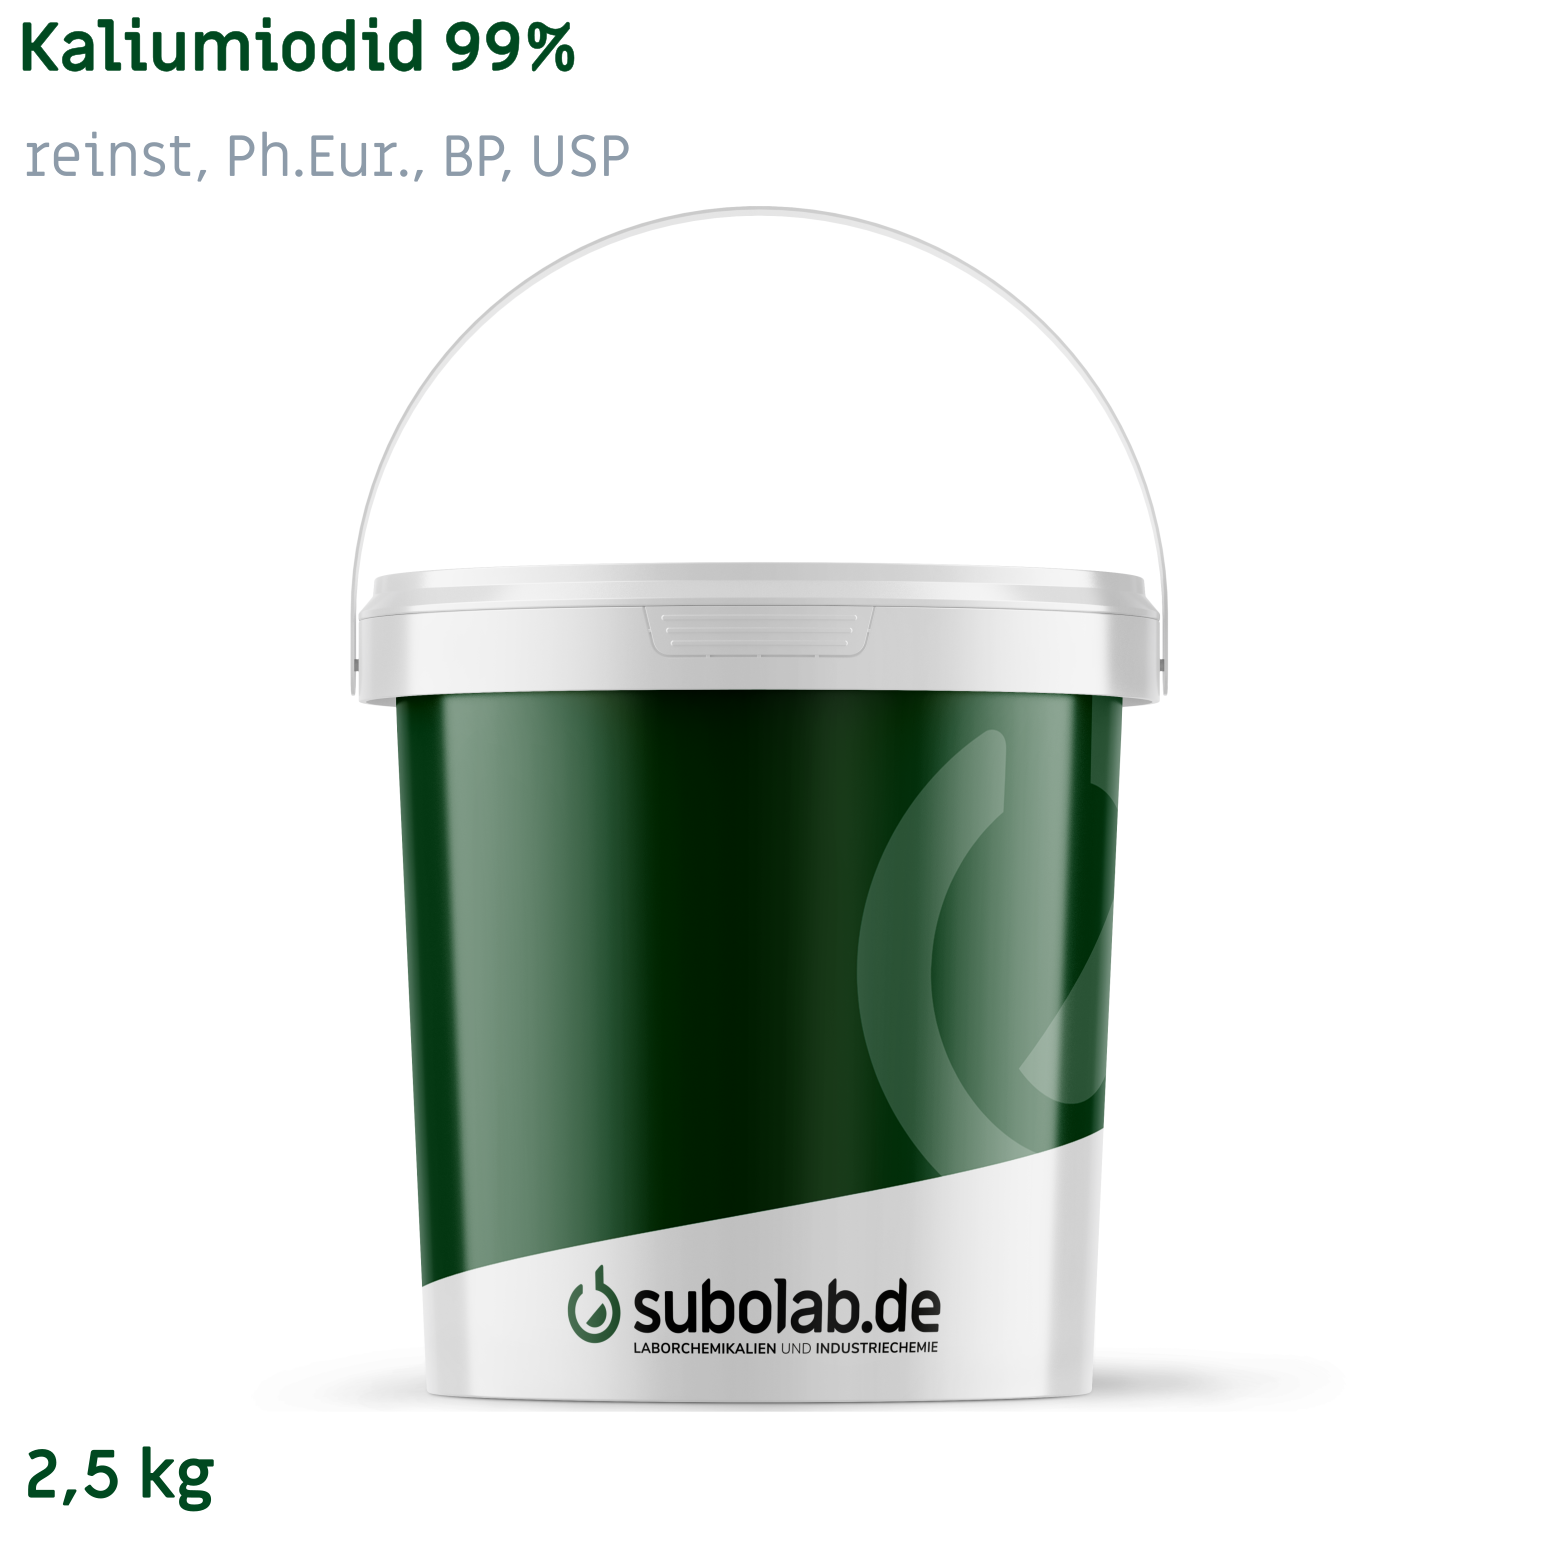 Bild von Kaliumiodid 99% reinst, Ph.Eur., BP, USP (2,5 kg)